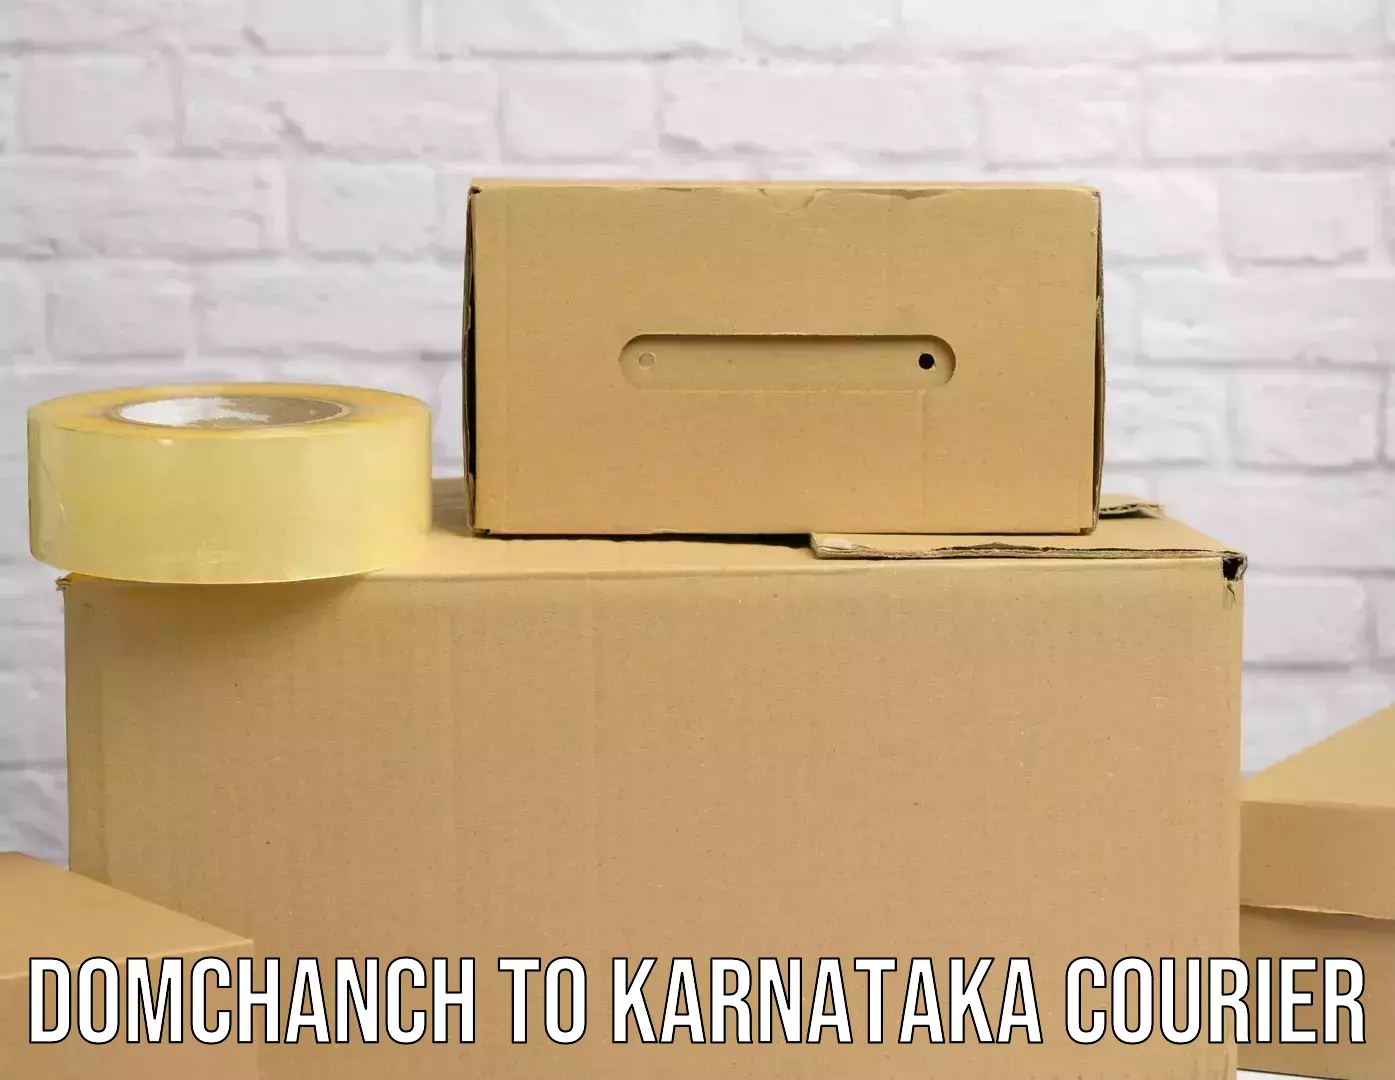 Specialized shipment handling Domchanch to Karnataka